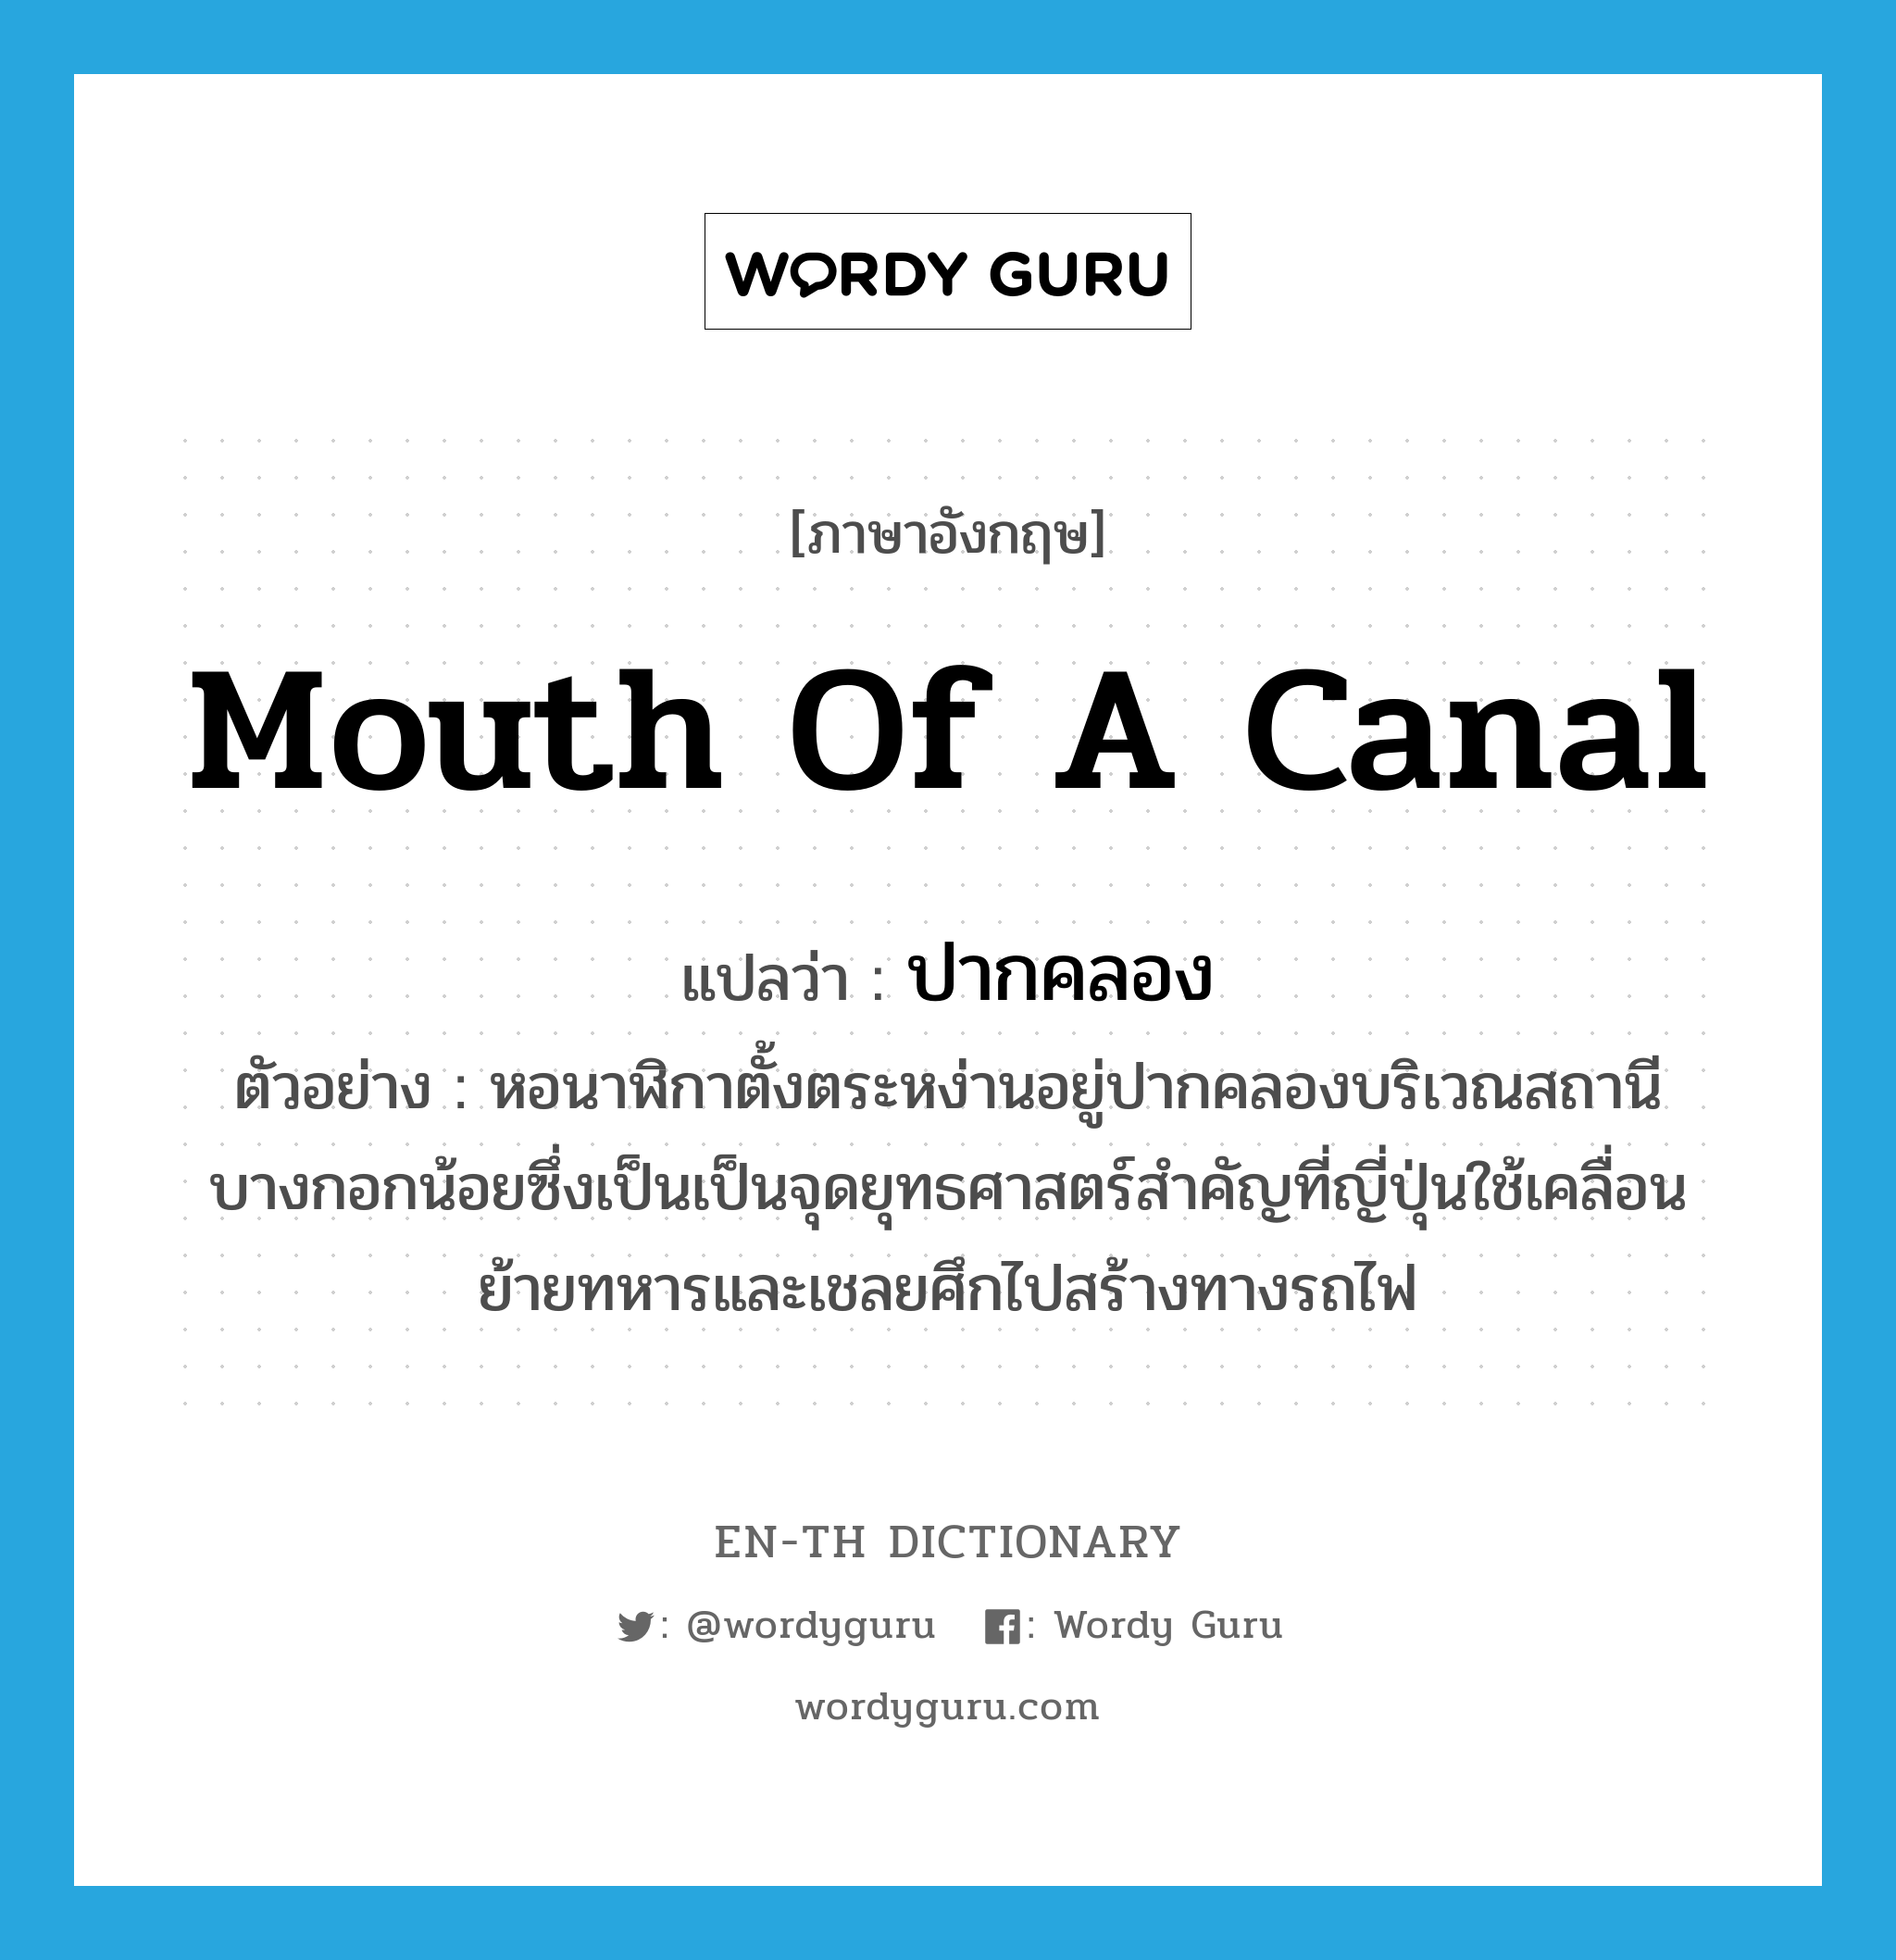 mouth of a canal แปลว่า?, คำศัพท์ภาษาอังกฤษ mouth of a canal แปลว่า ปากคลอง ประเภท N ตัวอย่าง หอนาฬิกาตั้งตระหง่านอยู่ปากคลองบริเวณสถานีบางกอกน้อยซึ่งเป็นเป็นจุดยุทธศาสตร์สำคัญที่ญี่ปุ่นใช้เคลื่อนย้ายทหารและเชลยศึกไปสร้างทางรถไฟ หมวด N